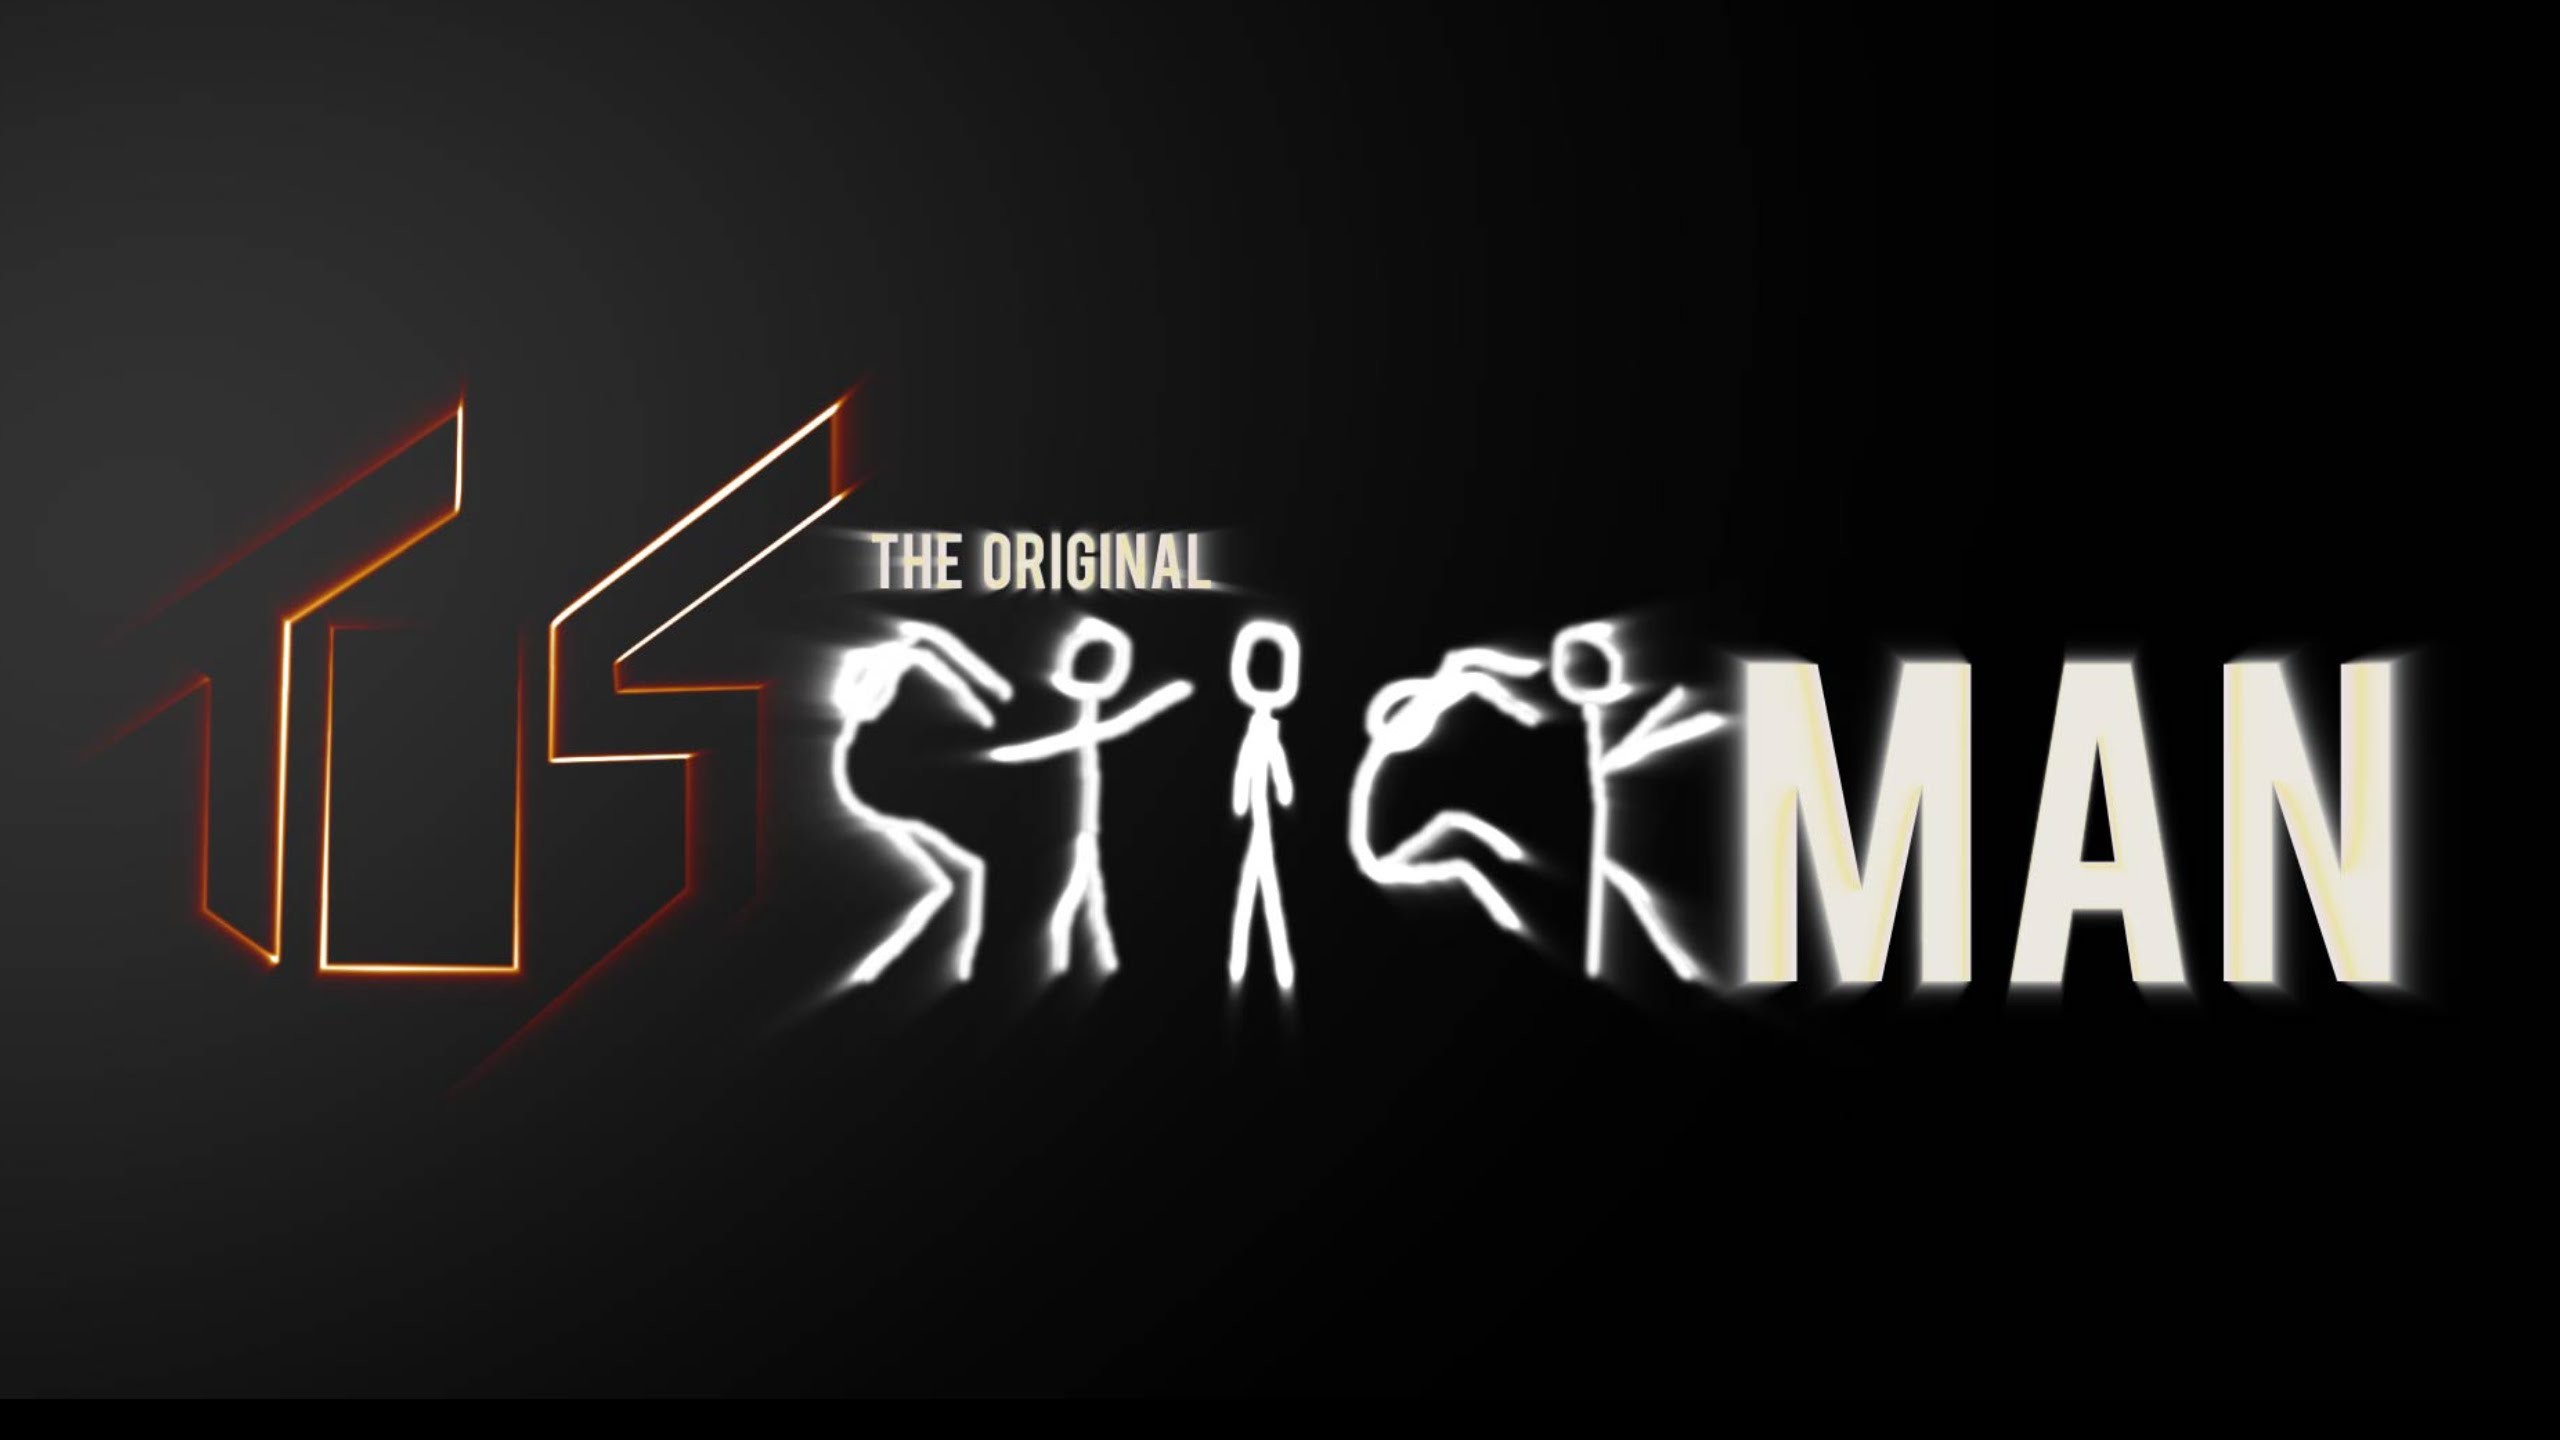 2560x1440 The Original Stickman - Trailer